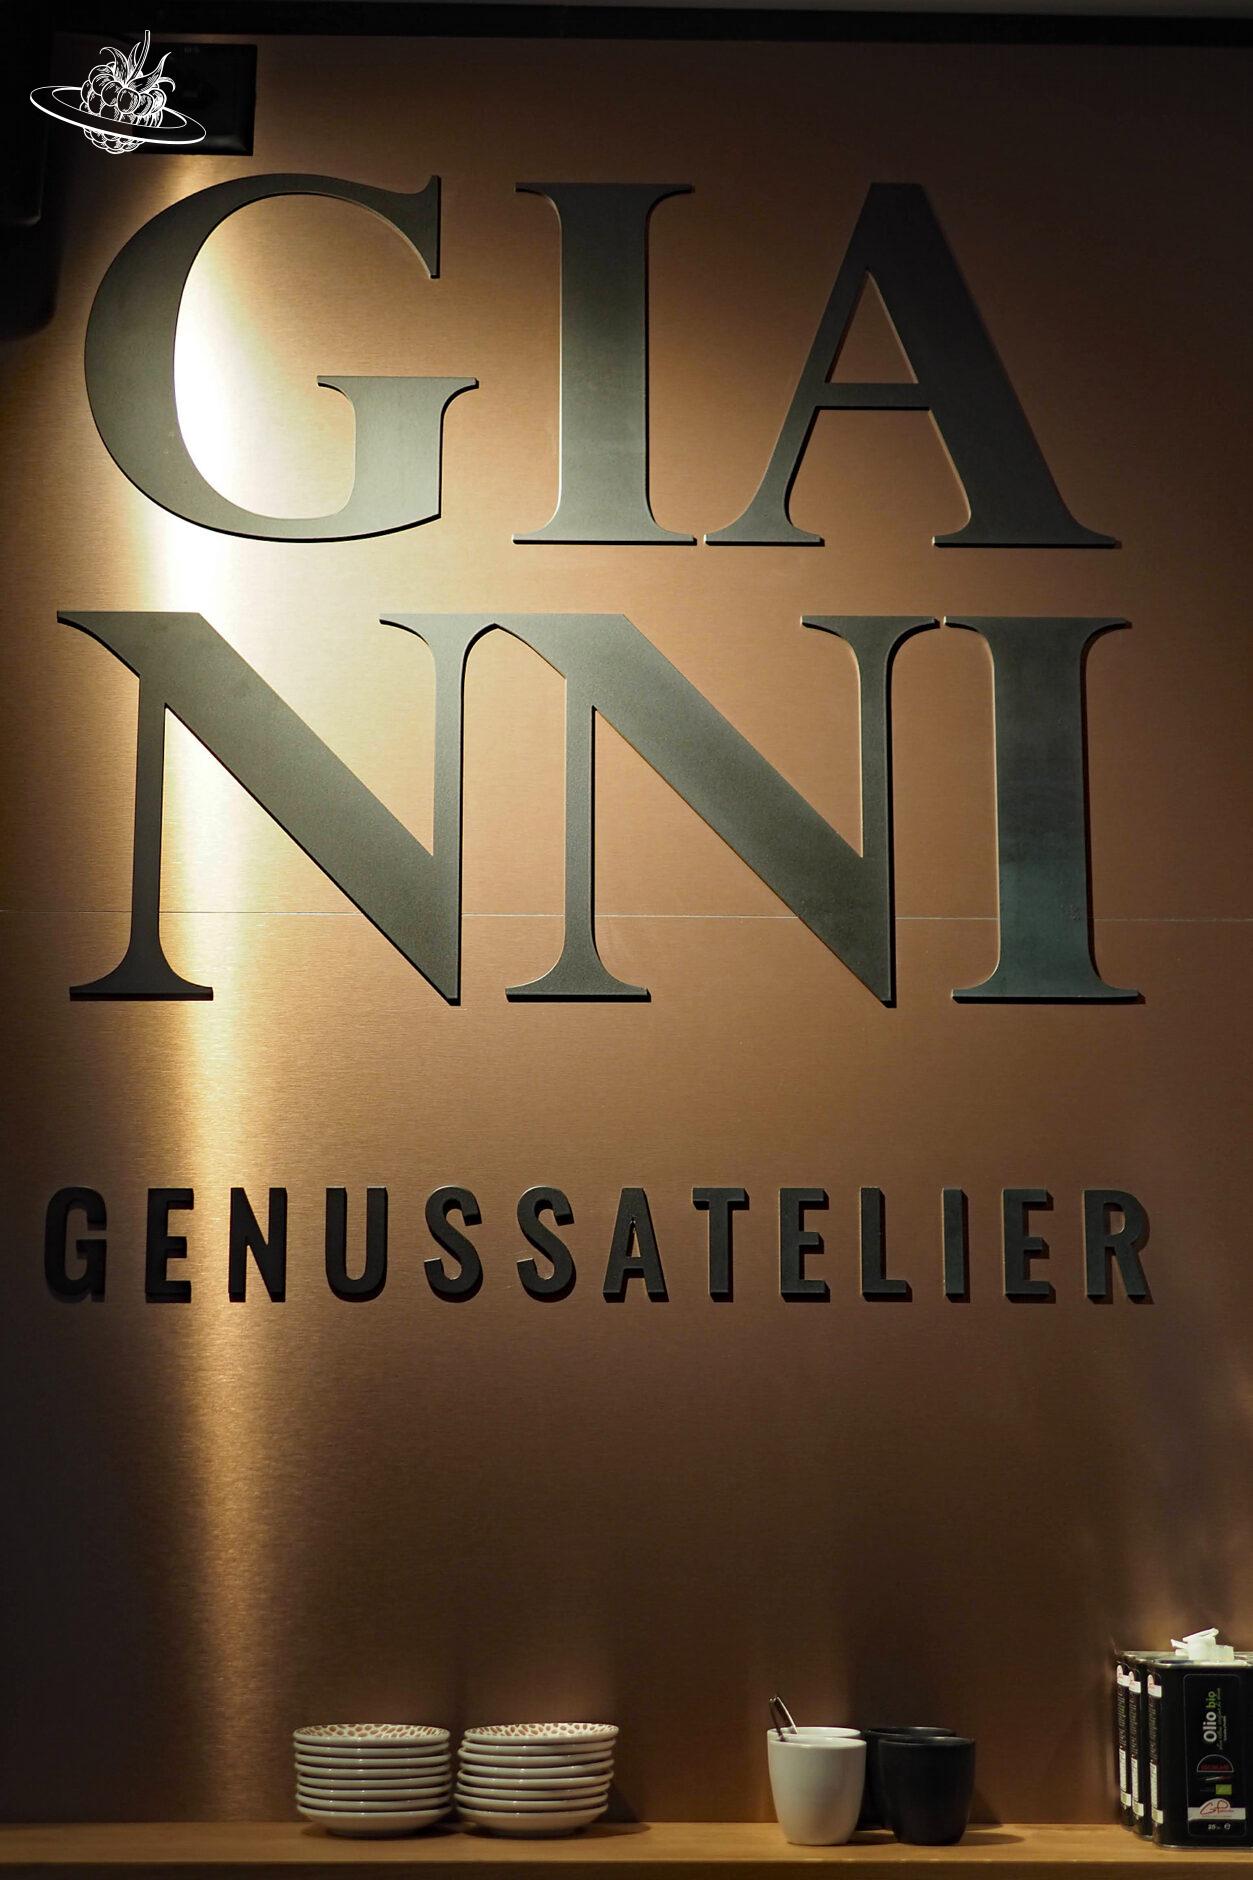 Grosser Schriftzug "Gianni Genussatelier" an der Wand